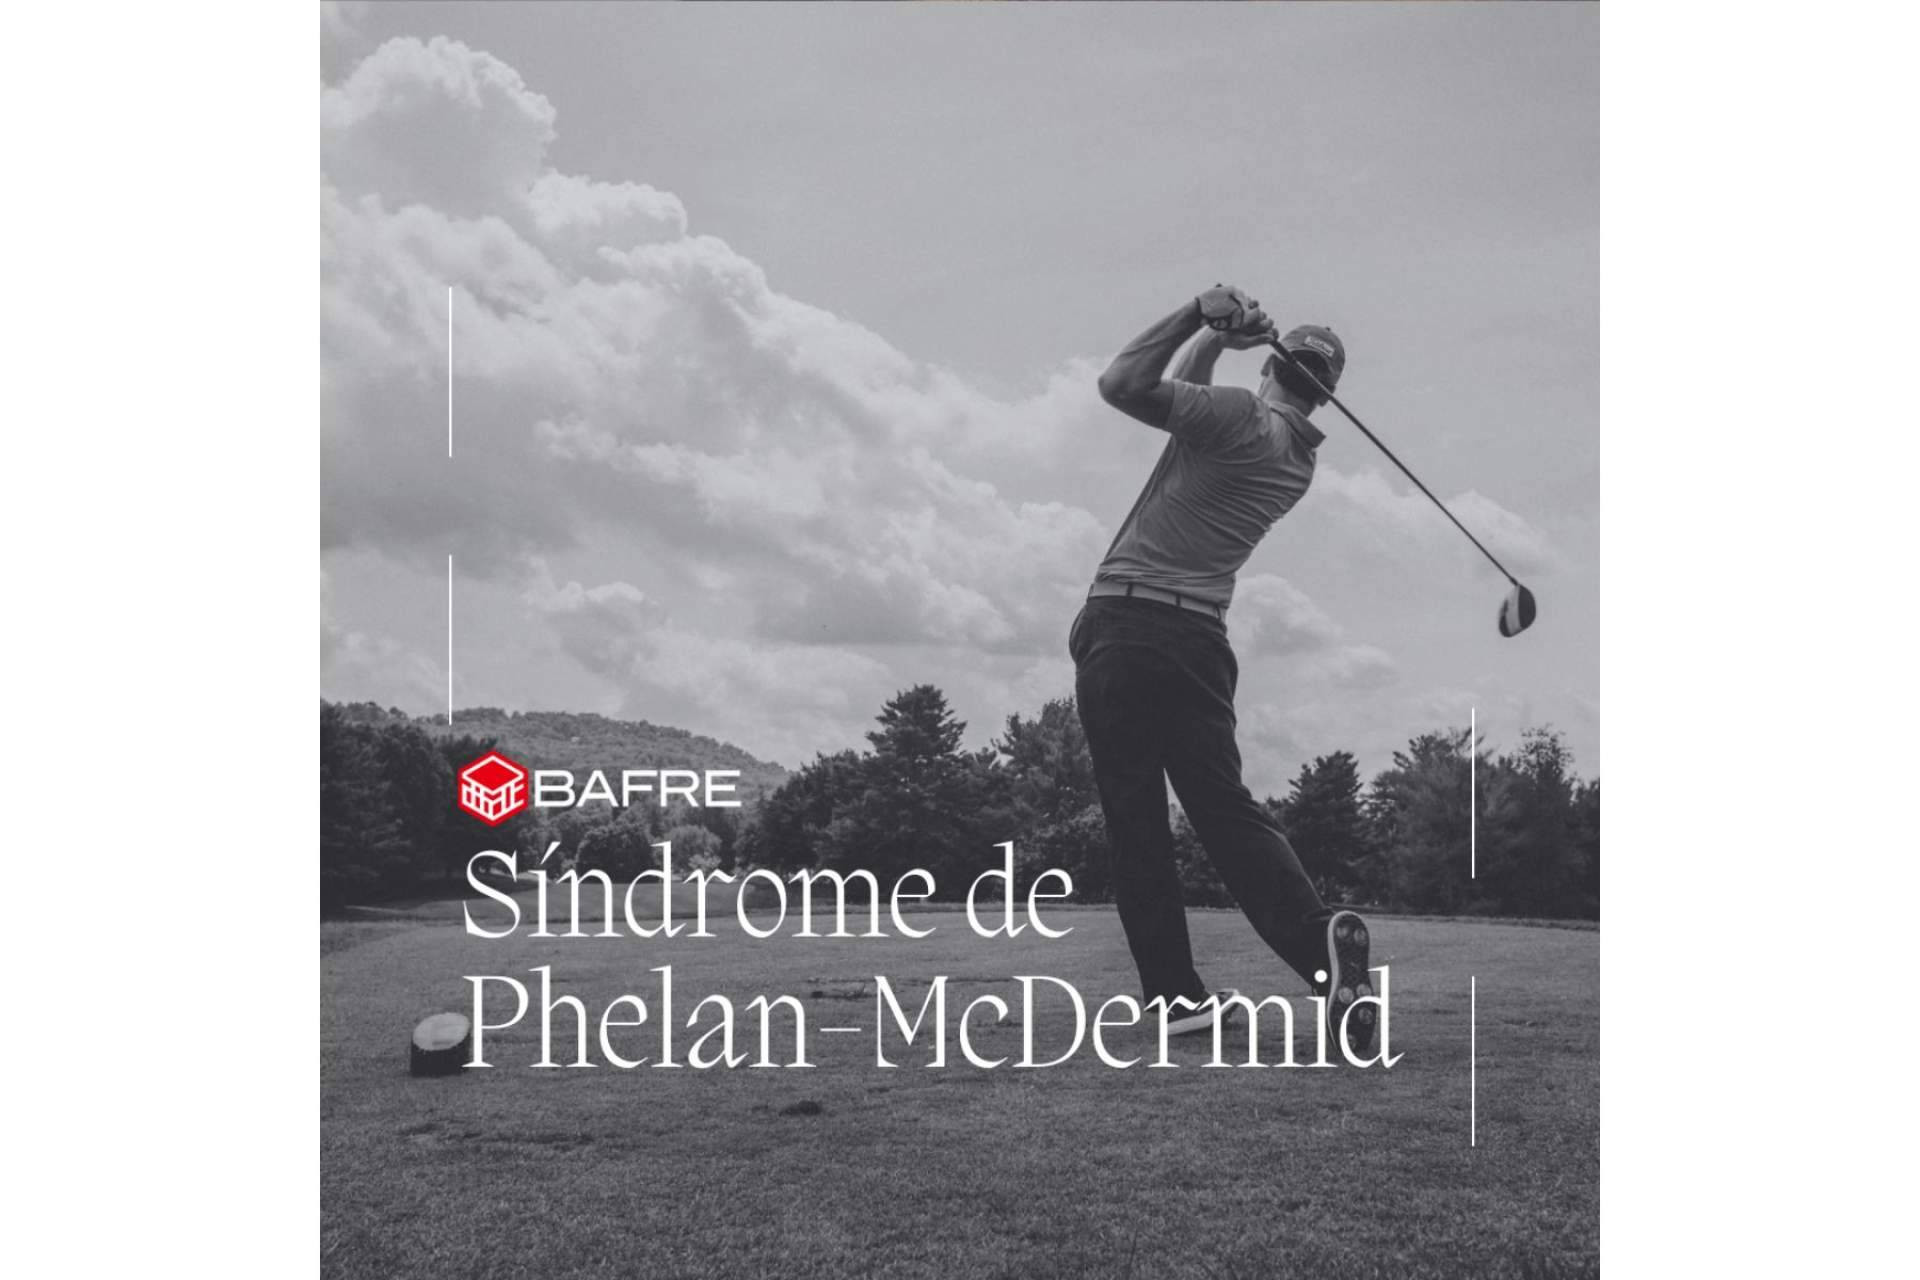  La colaboración de Bafre Inmobiliaria en el campeonato de golf solidario de la Asociación Síndrome Phelan-McDermid 